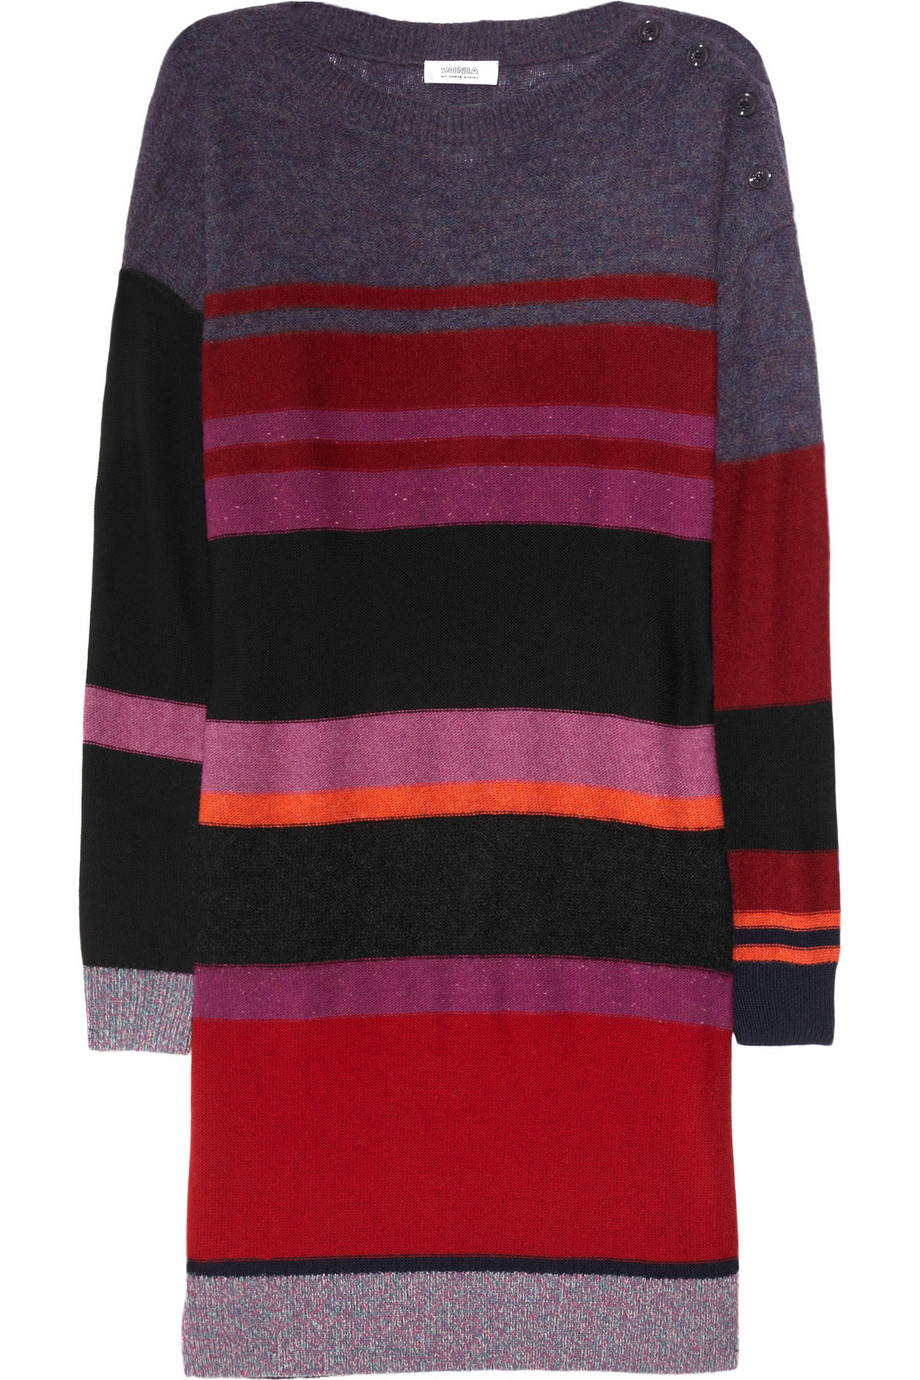 Sonia By Sonia Rykiel Striped Woolblend Sweater Dress in Multicolor ...